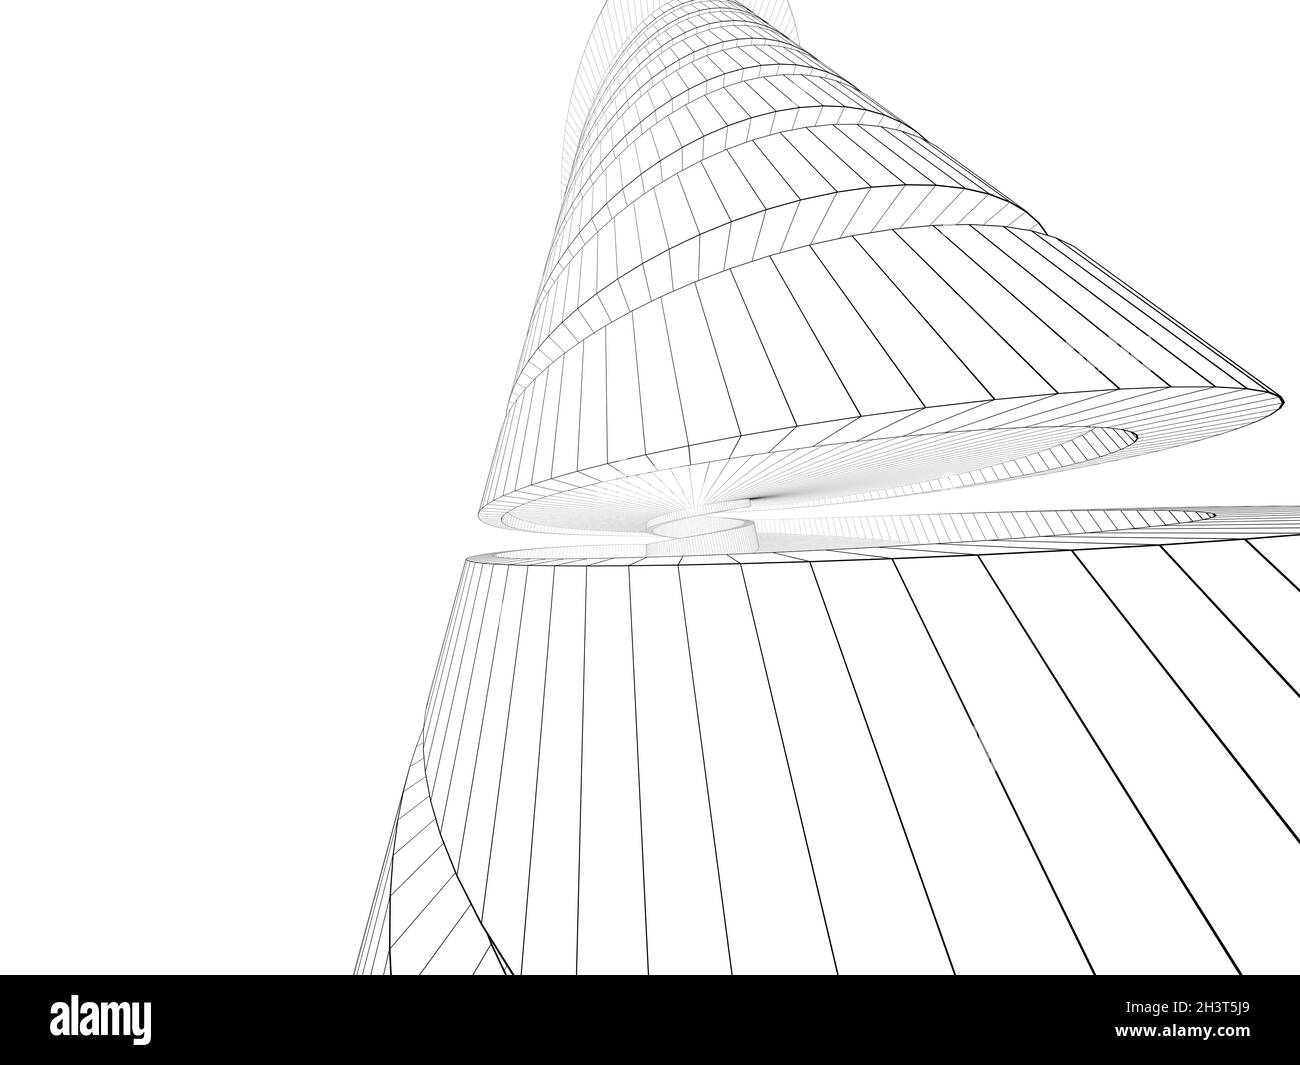 Modello di torre a spirale con struttura a filo, vista prospettica grandangolare isolata su sfondo bianco, illustrazione del rendering 3d Foto Stock